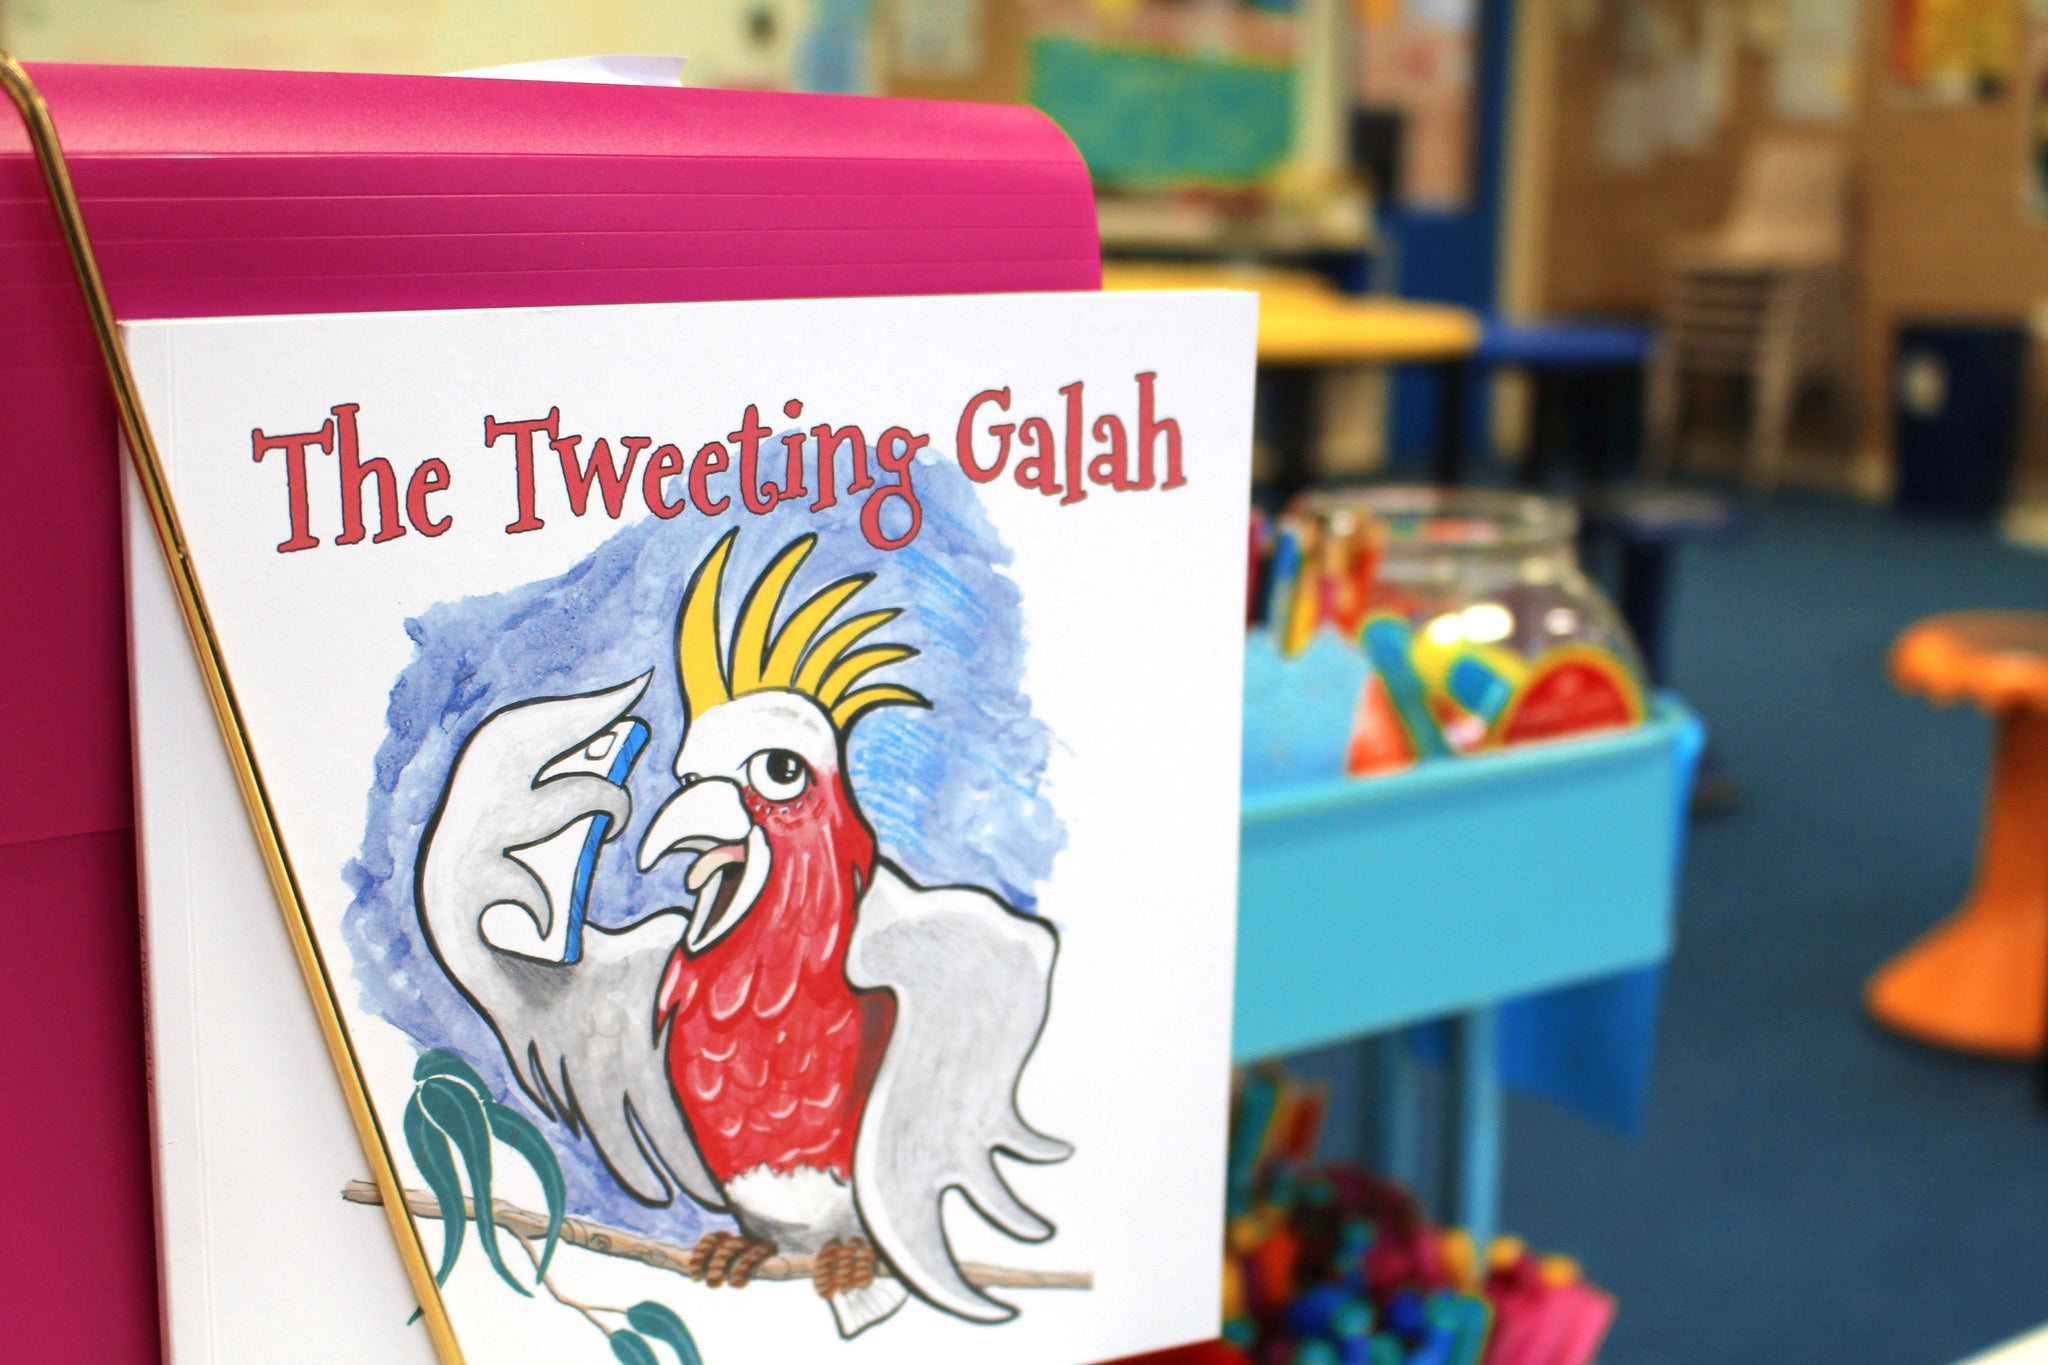 The Tweeting Galah - The Tweeting Galah